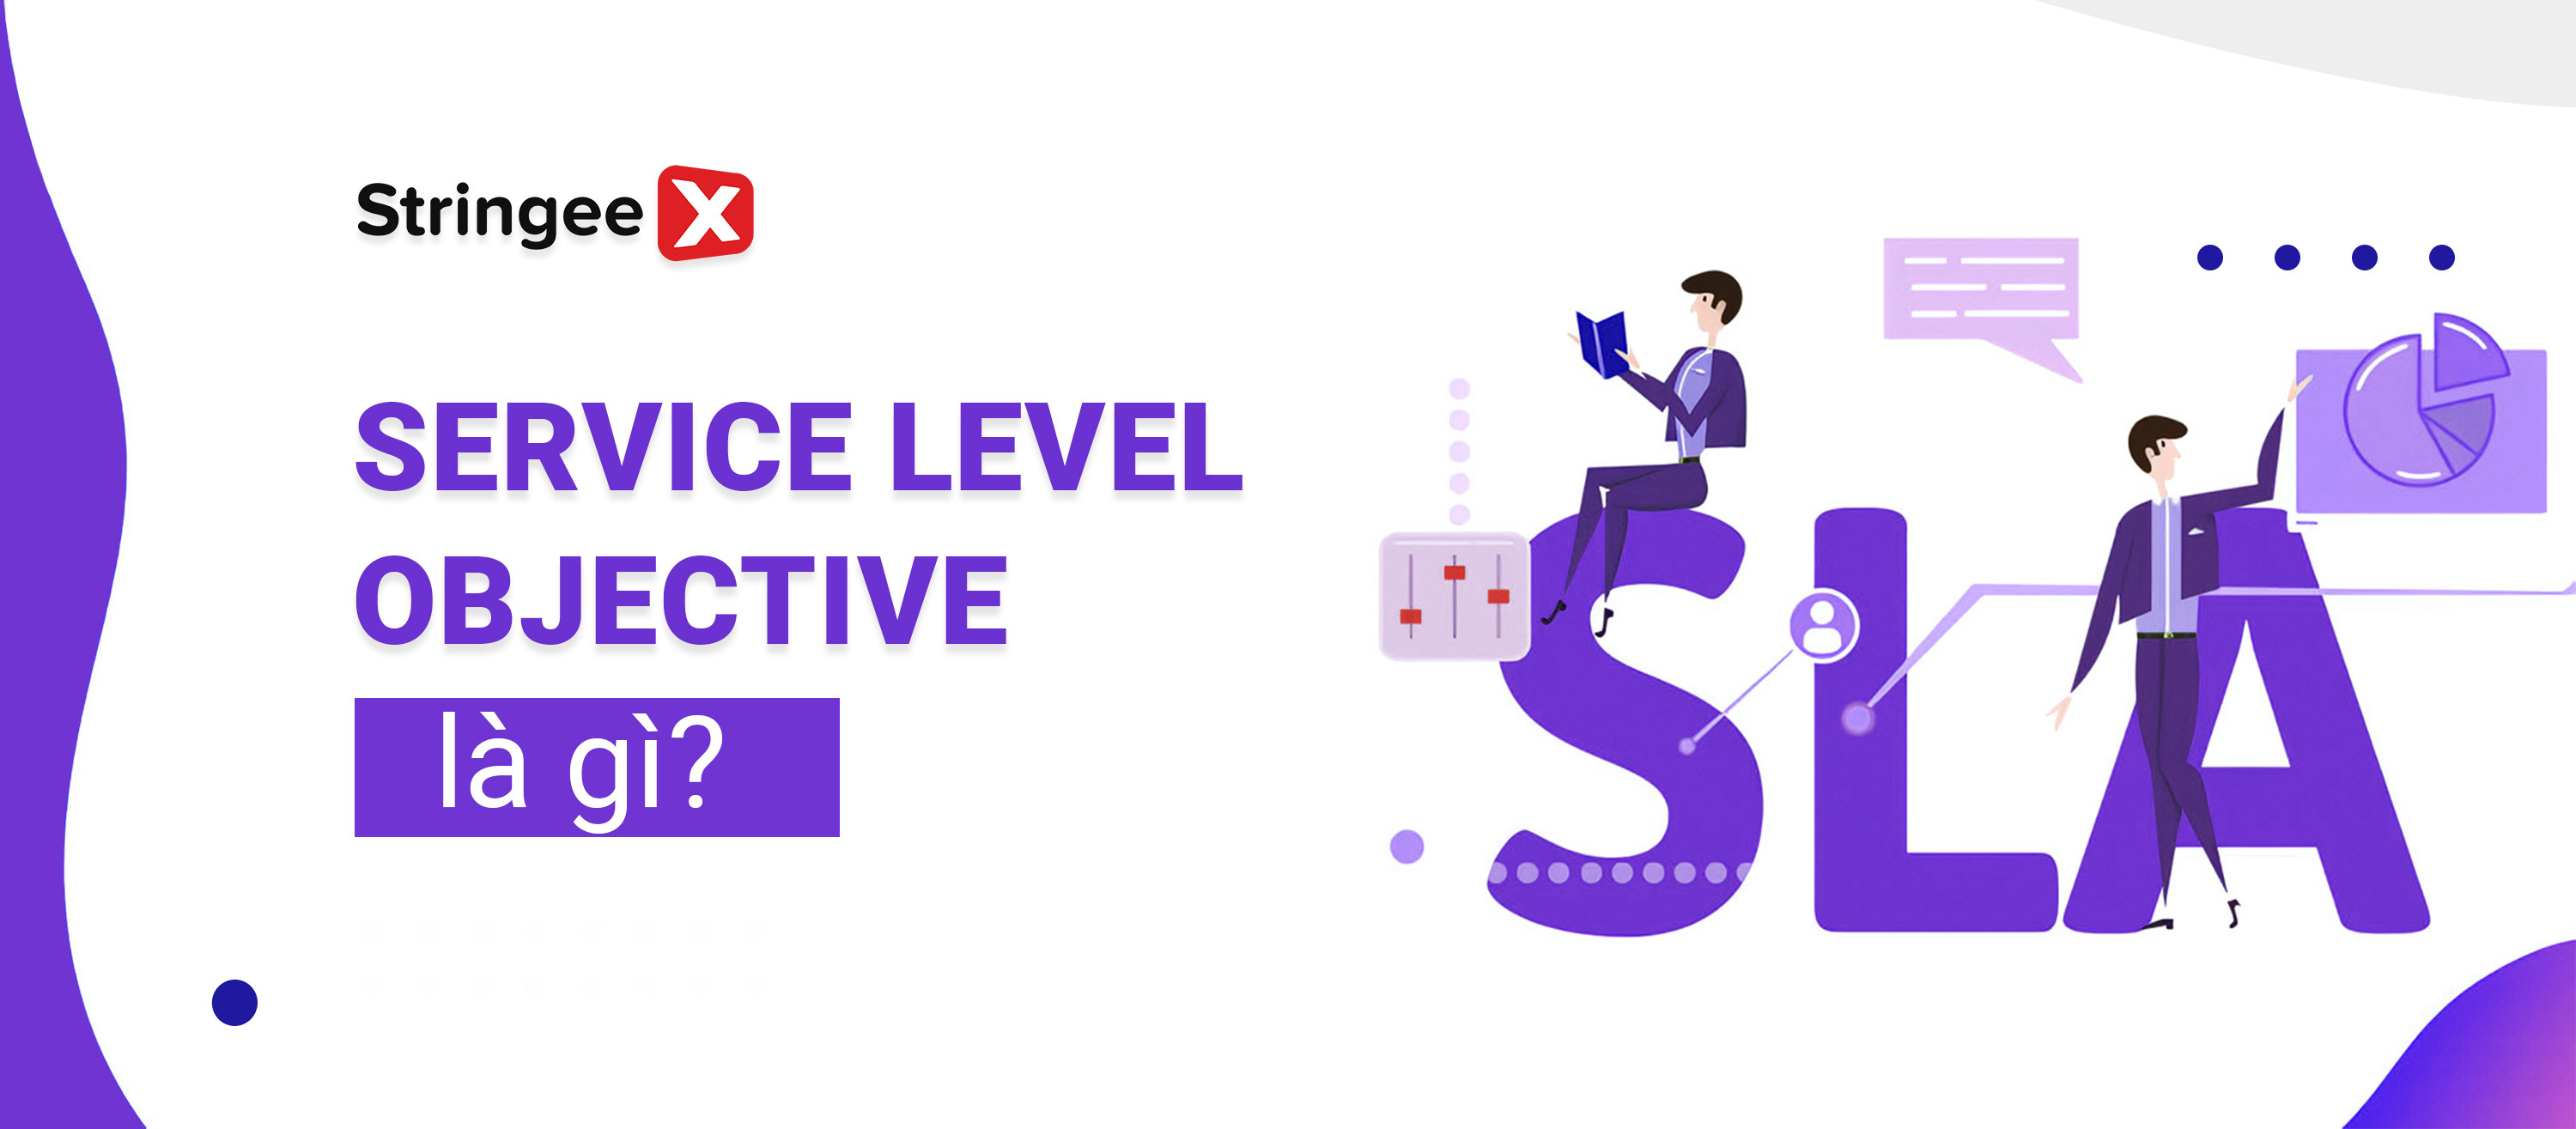 Service Level Objective (SLO) là gì? Hướng dẫn kiểm tra và đánh giá mục tiêu cấp dịch vụ